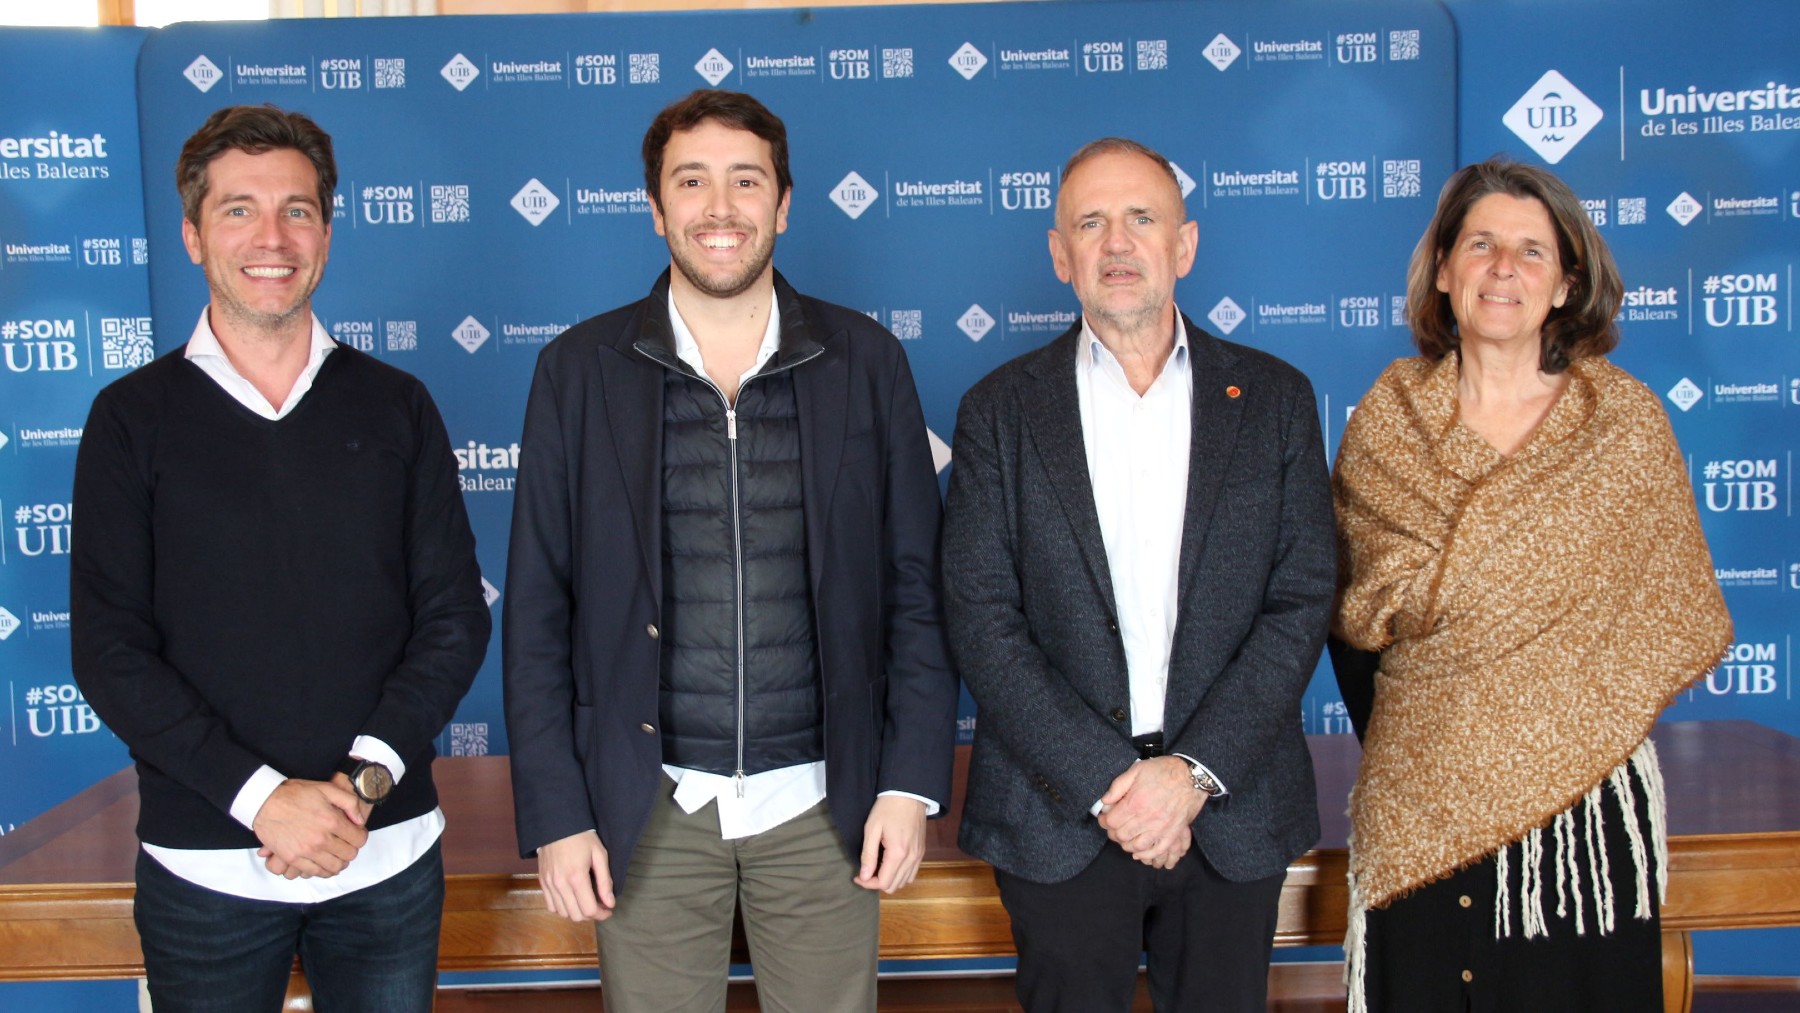 El vicepresidente y presidente de AJE, Blanc y Jaume; junto al rector y vicerrectora de la UIB, Carot y Carrasco.